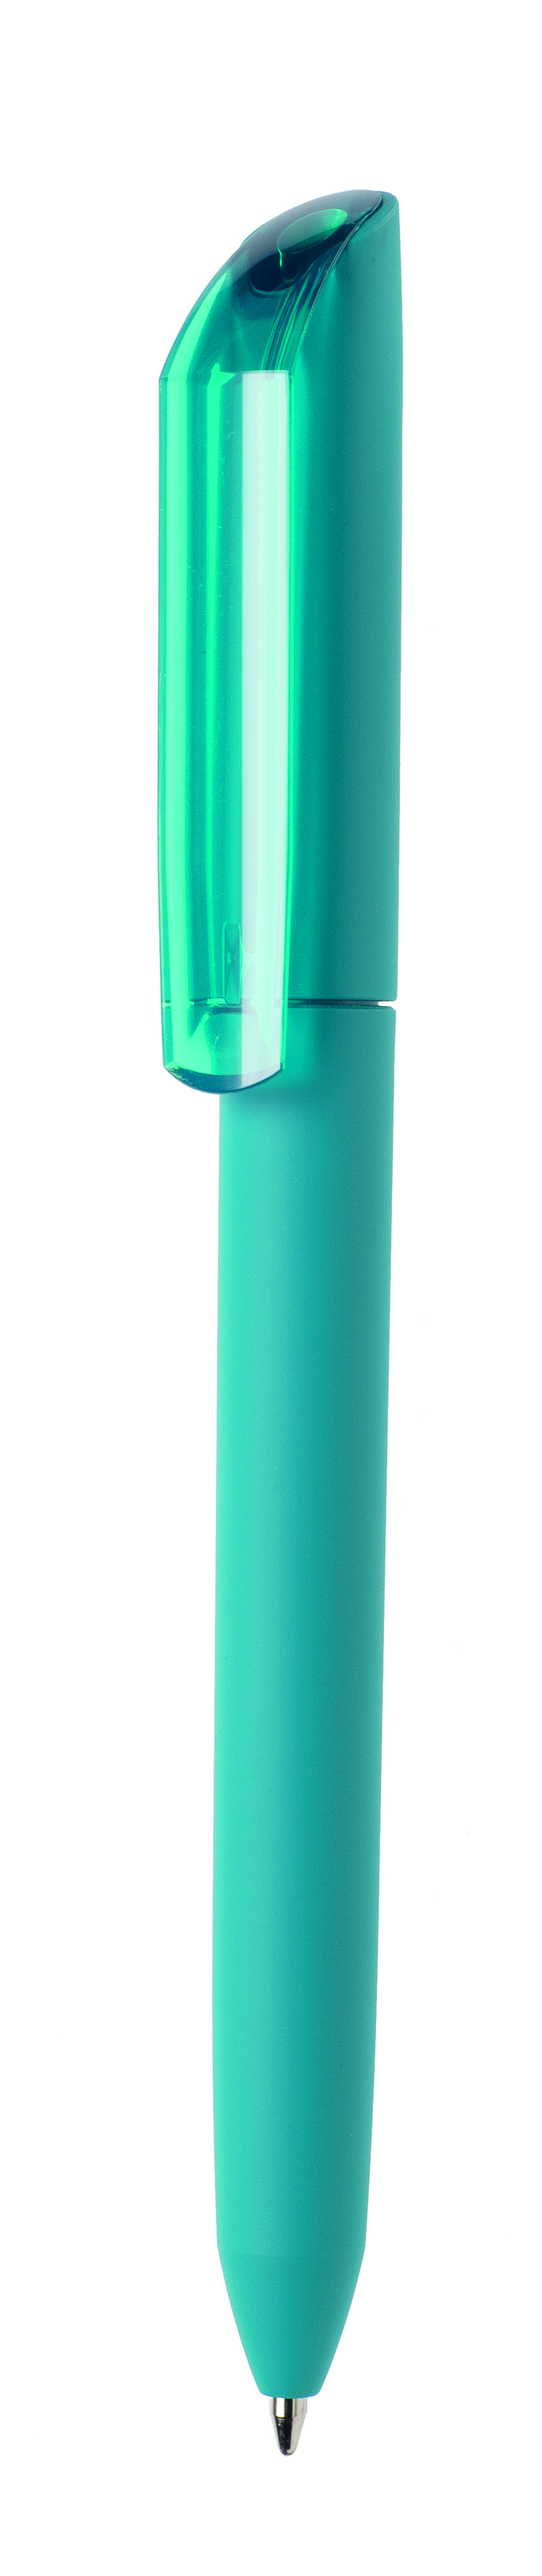 Ручка шариковая FLOW PURE, корпус цвета морской волны/прозрачный клип, покрытие soft touch, пластик